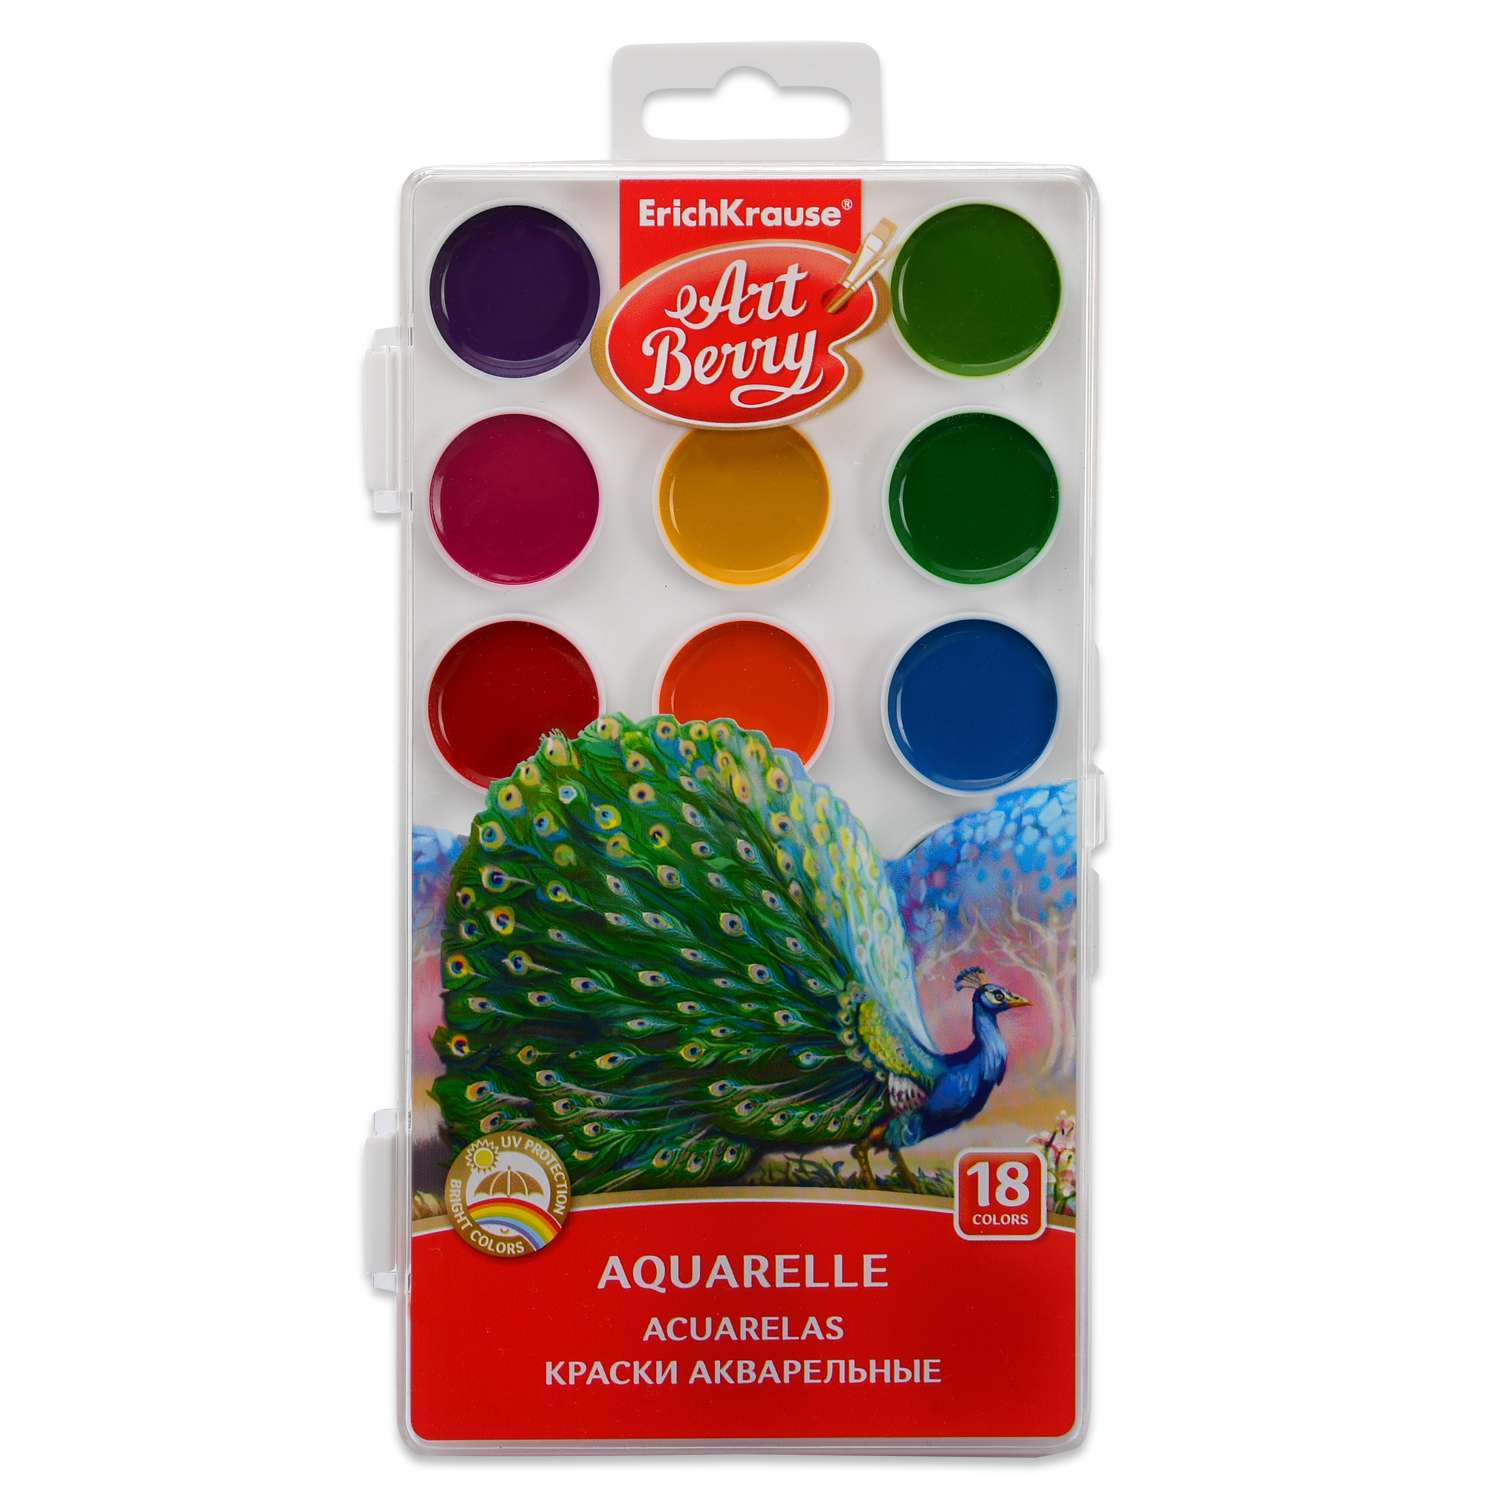 Краски акварельные ErichKrause artberry 18 цветов с уф защитой яркости - фото 1